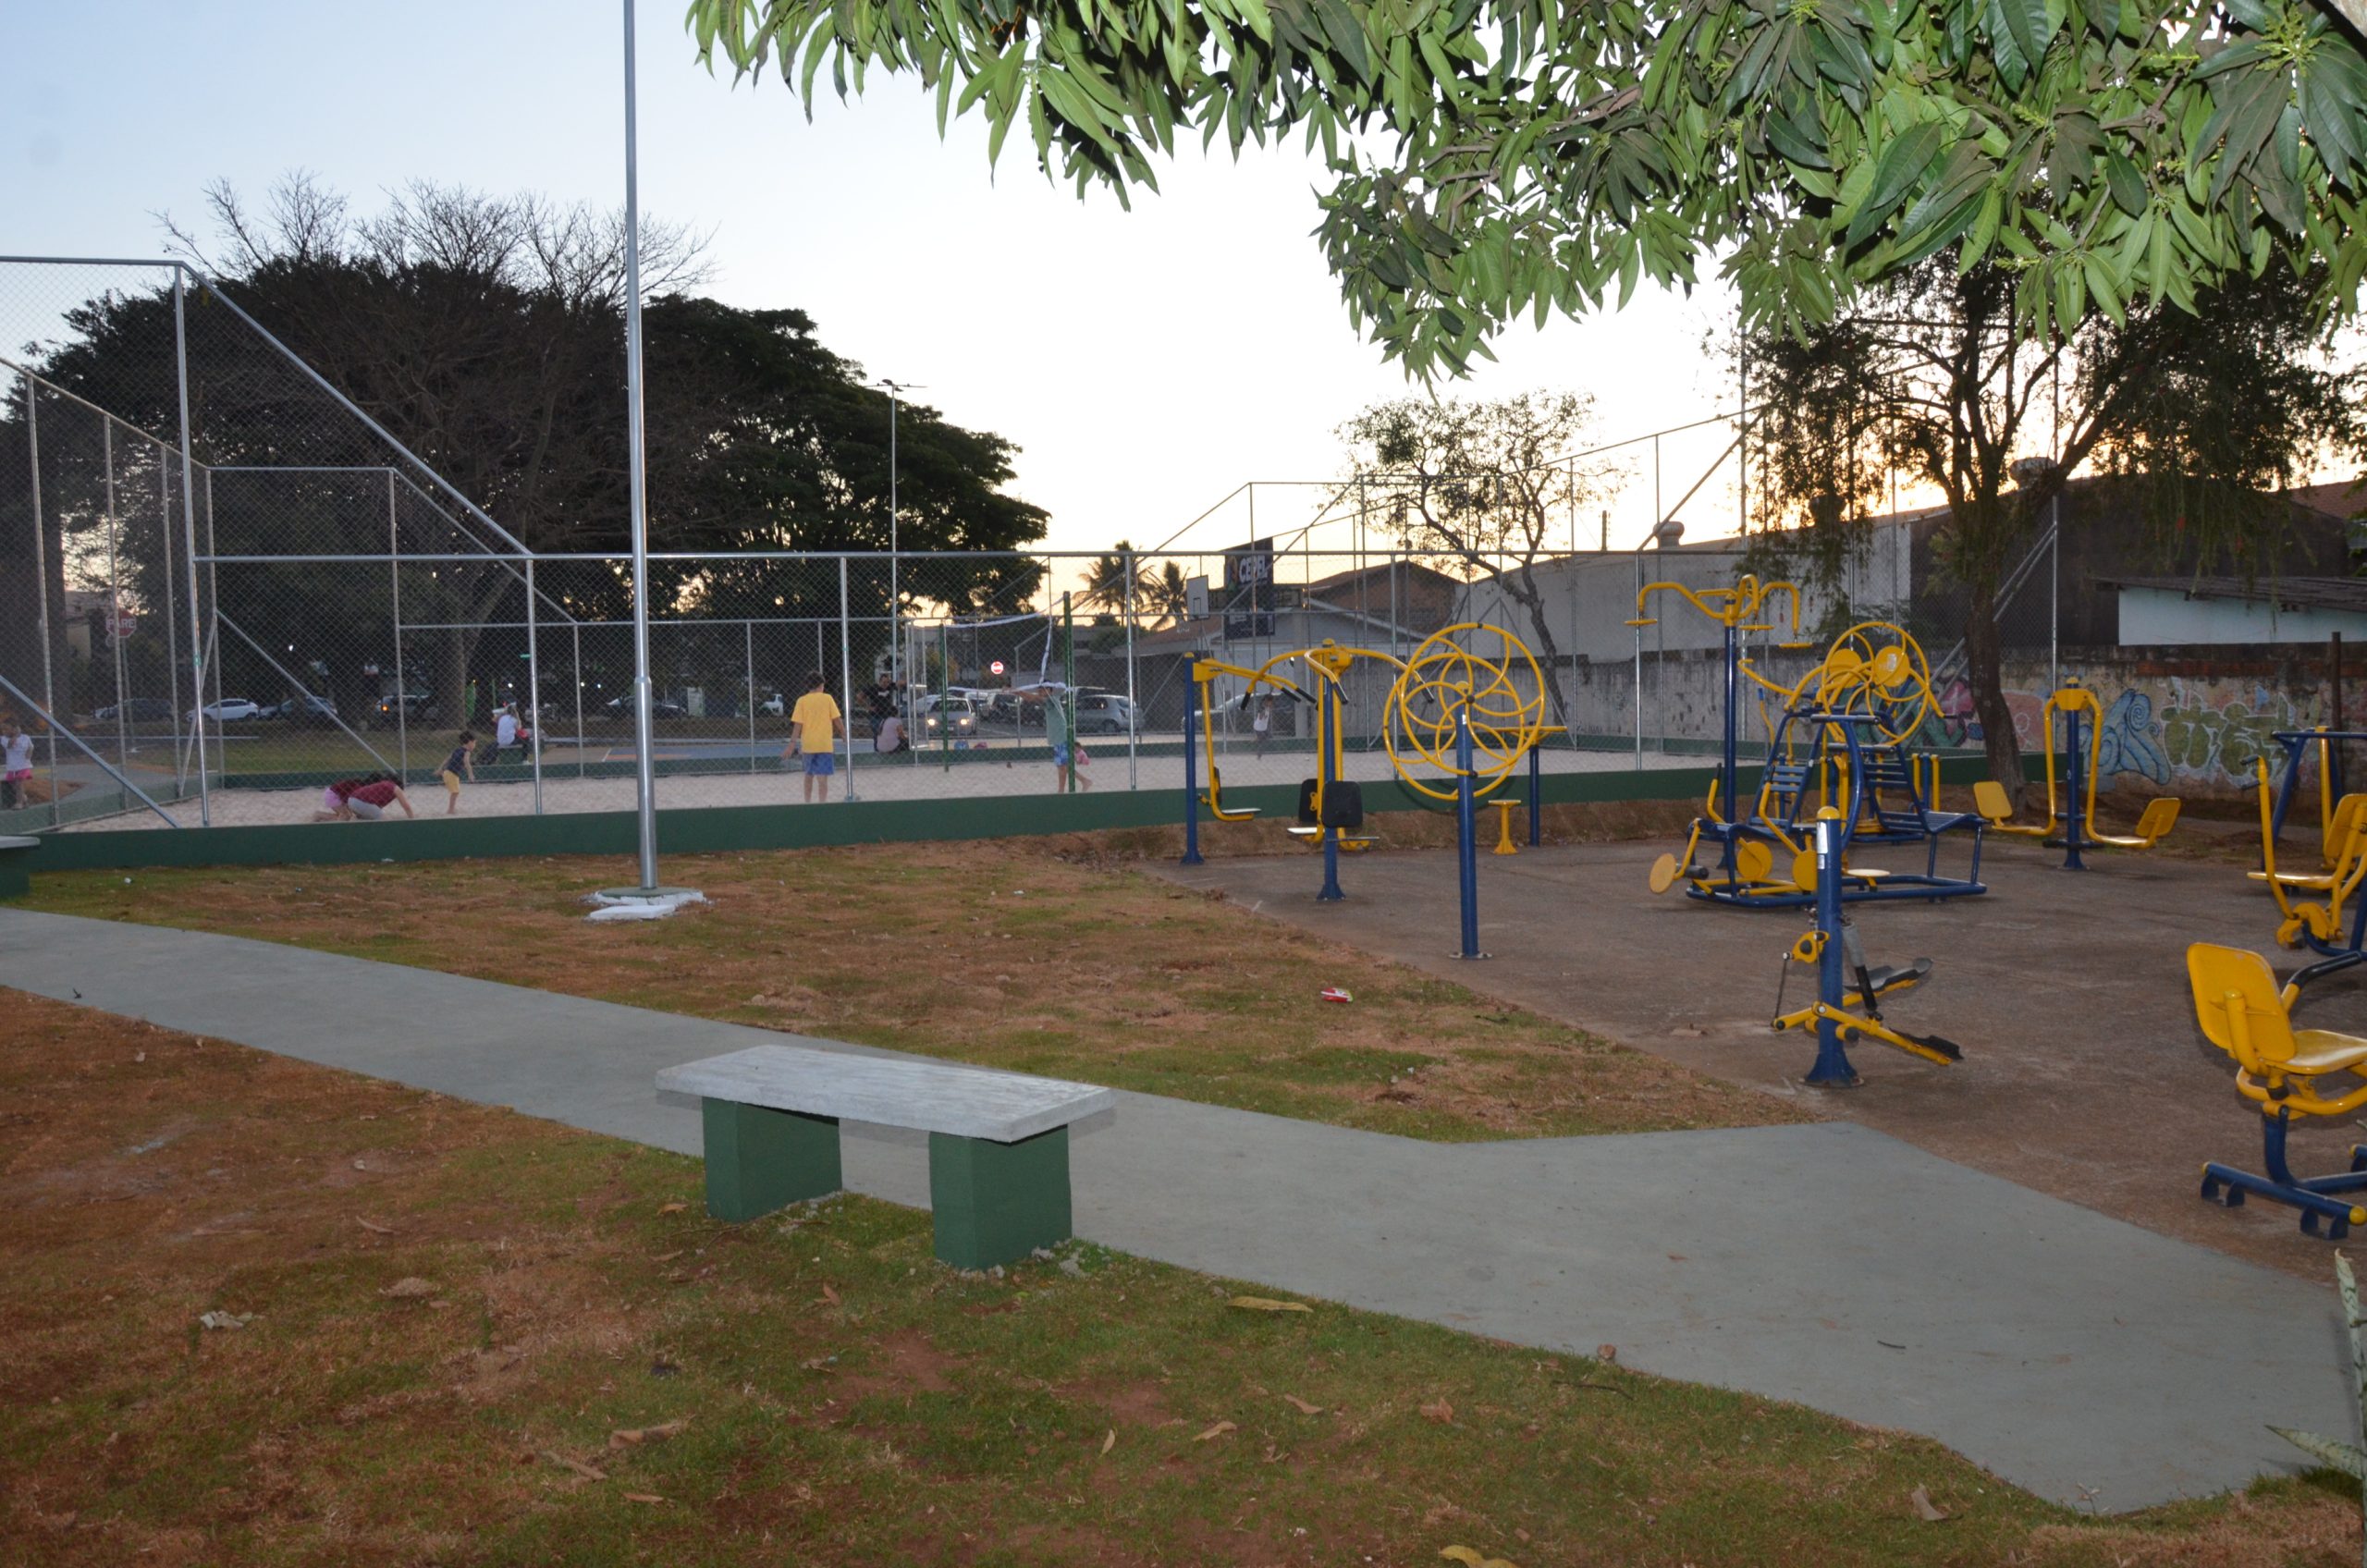 Jornal da Franca – Le nouveau CEPEL au Parque Progresso est une autre option de loisirs et de sport pour les résidents